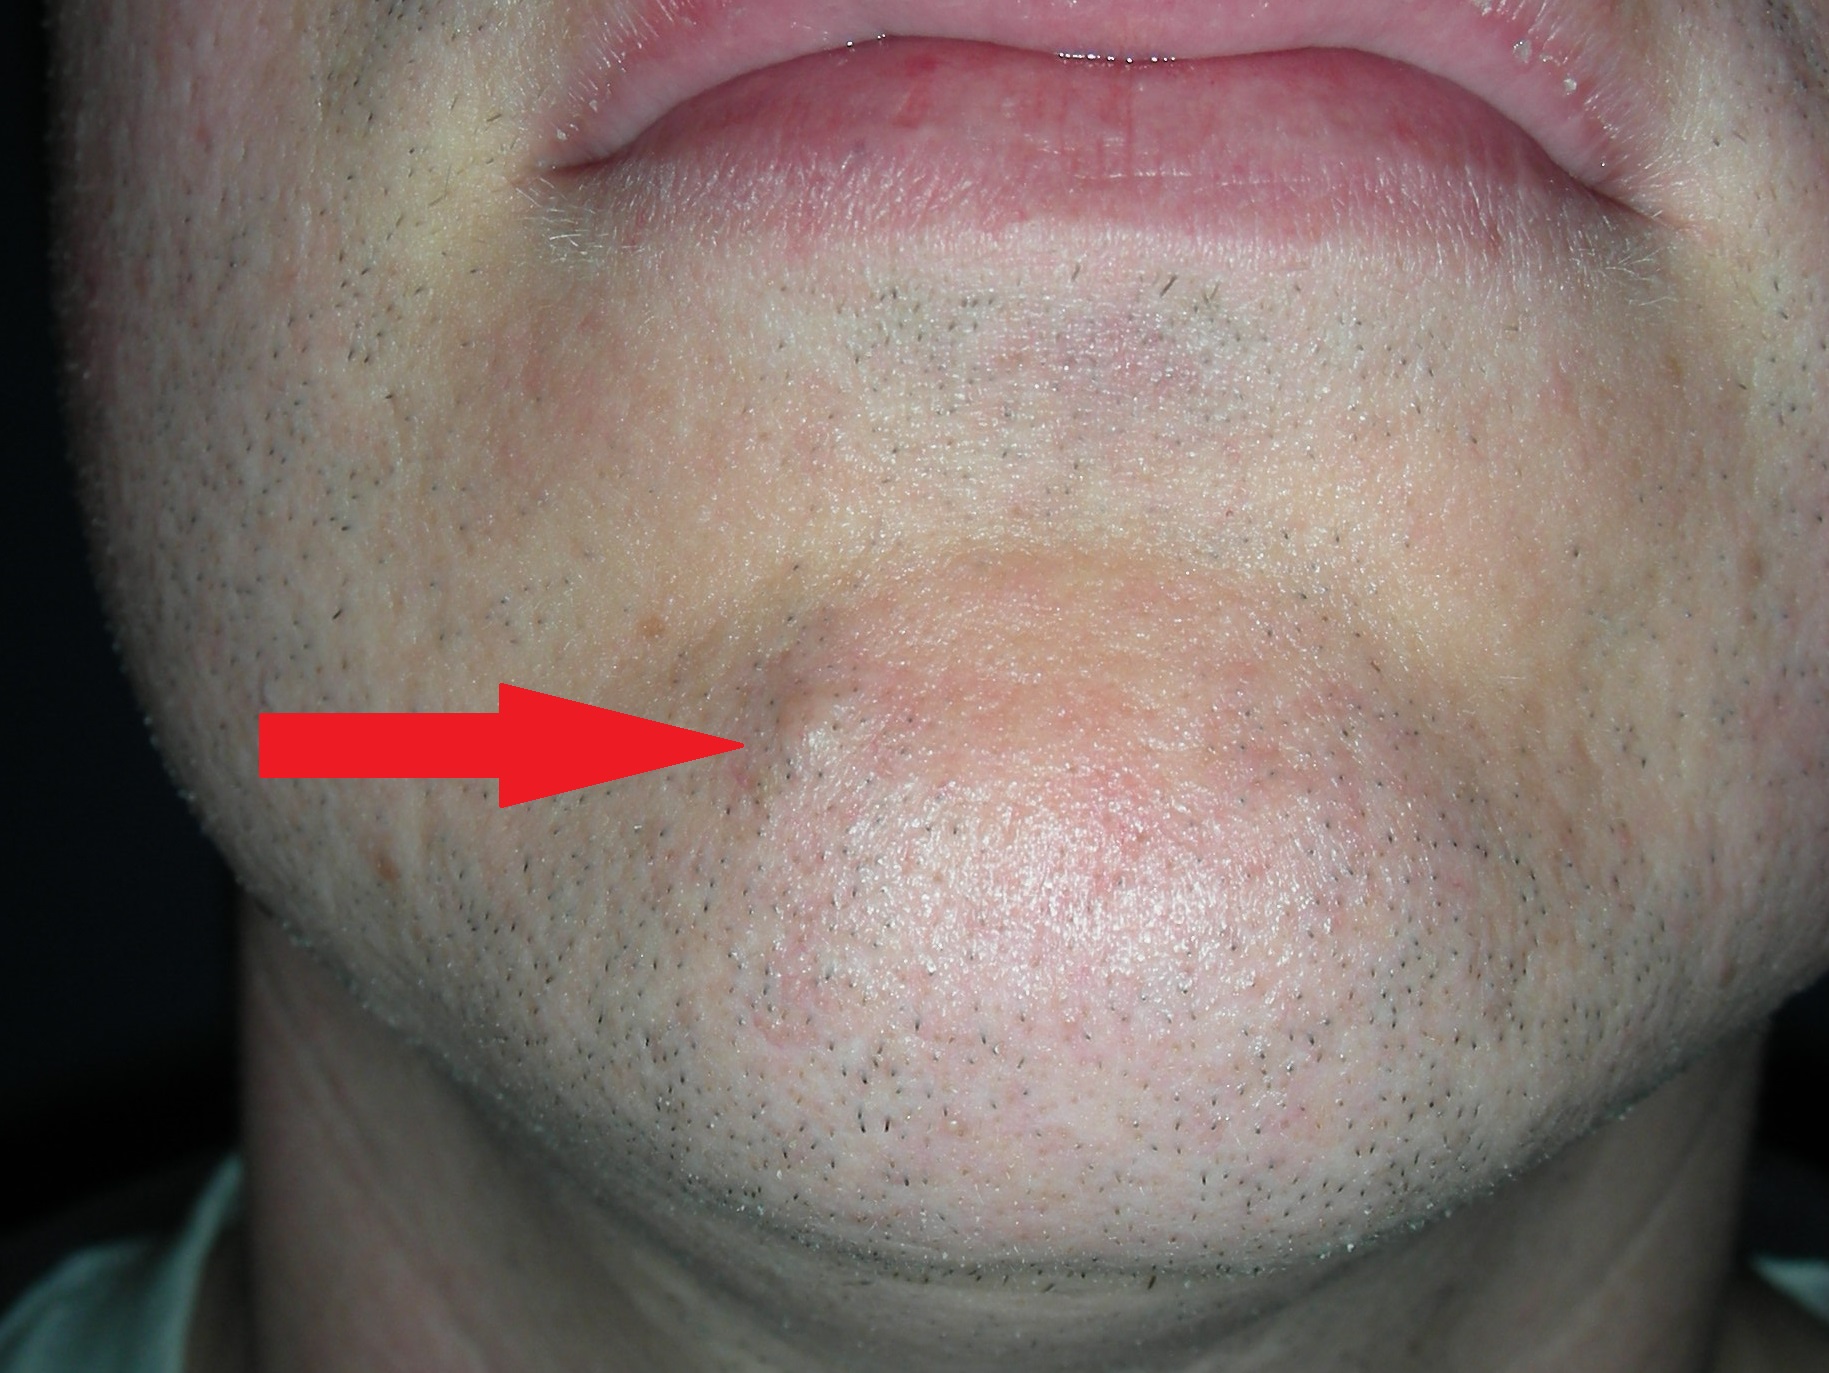 Mole lower lip